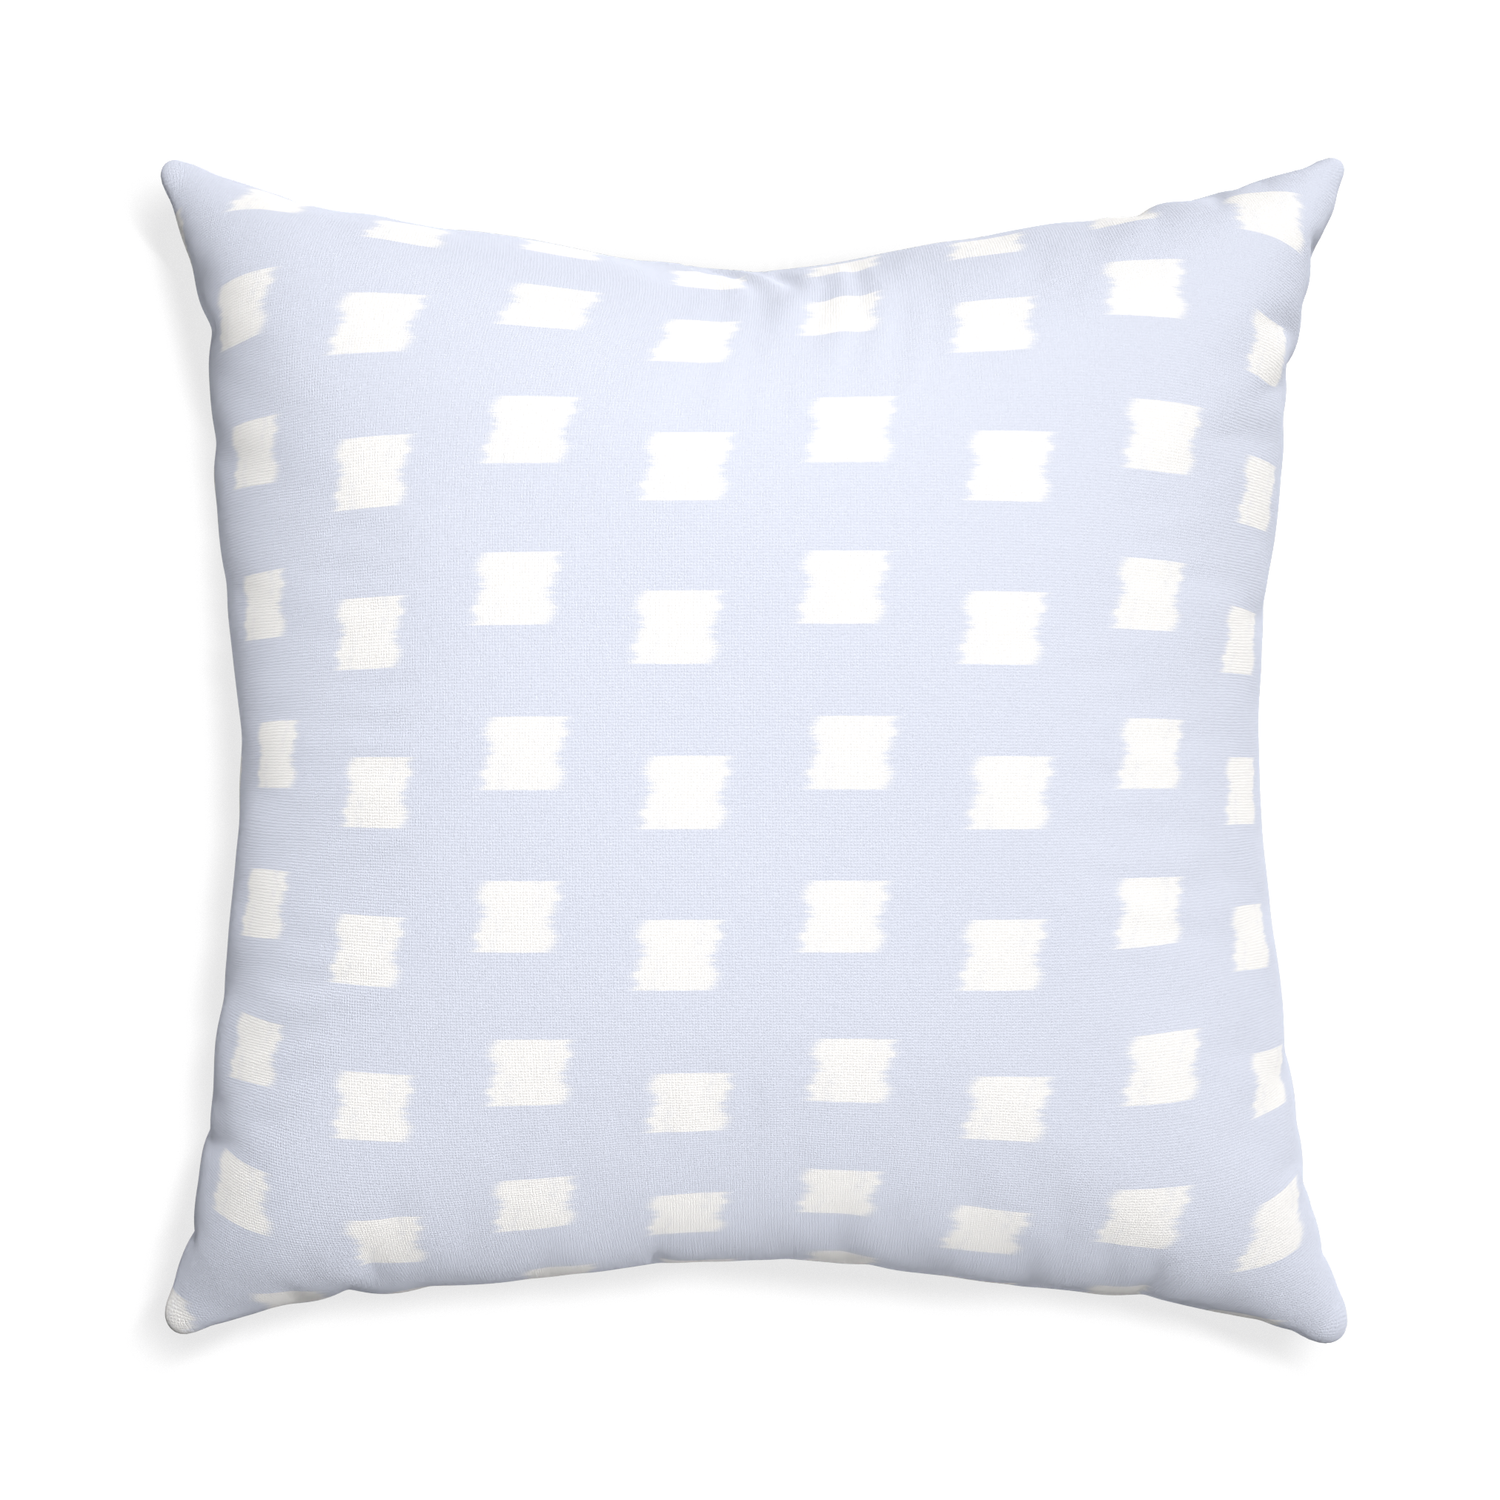 Euro-sham denton custom pillow with none on white background